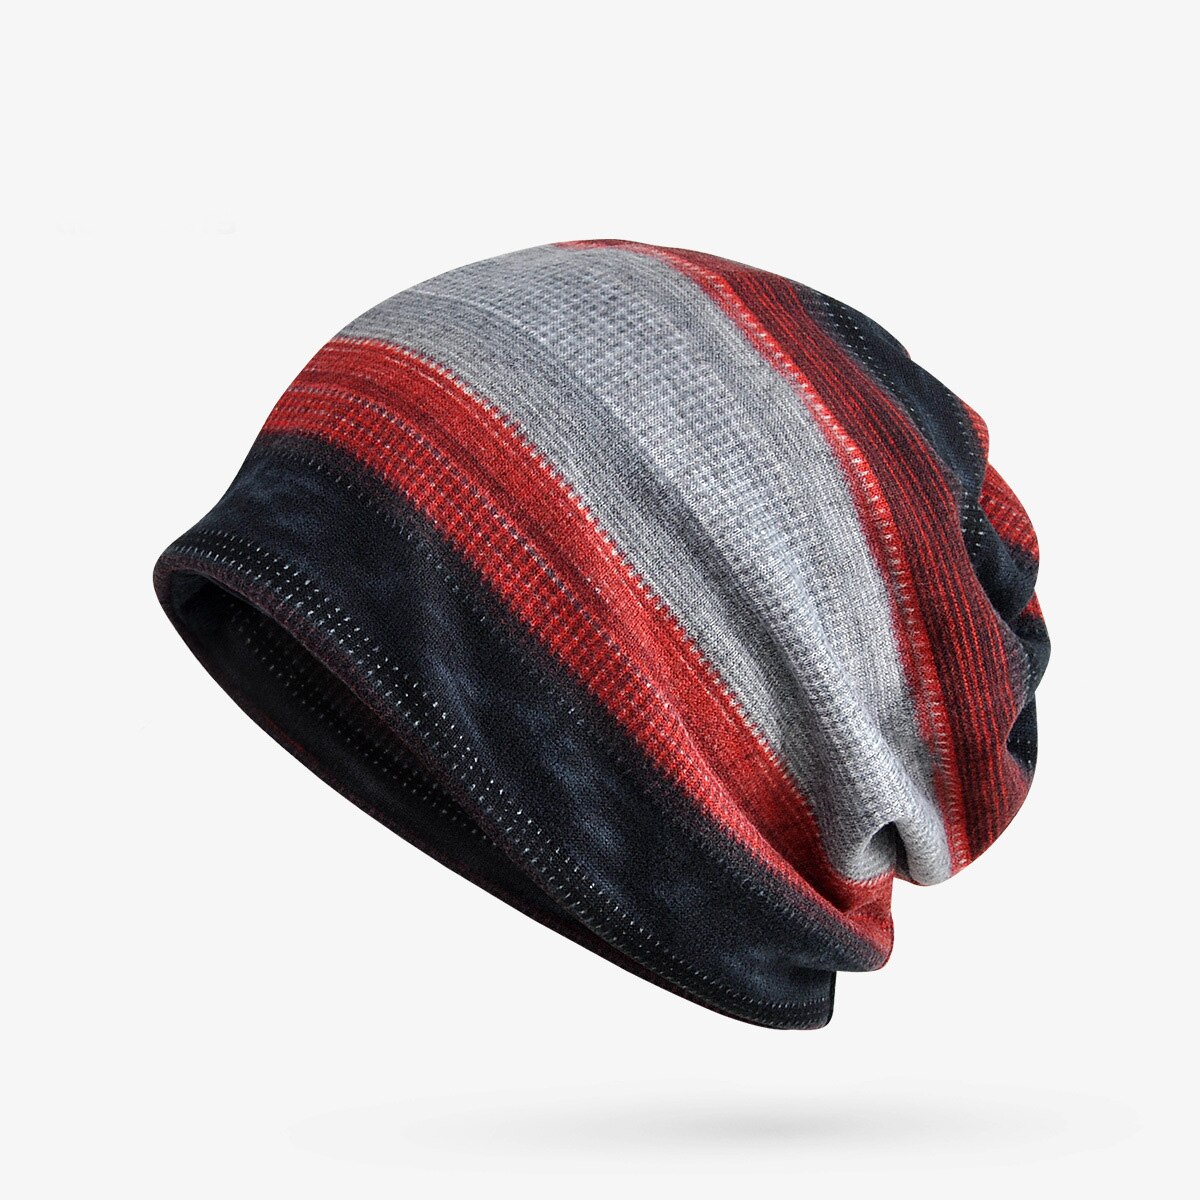 Vinter beanie hat tørklæde tyk varmere strik hat til mænd kvinder fleeceforhue